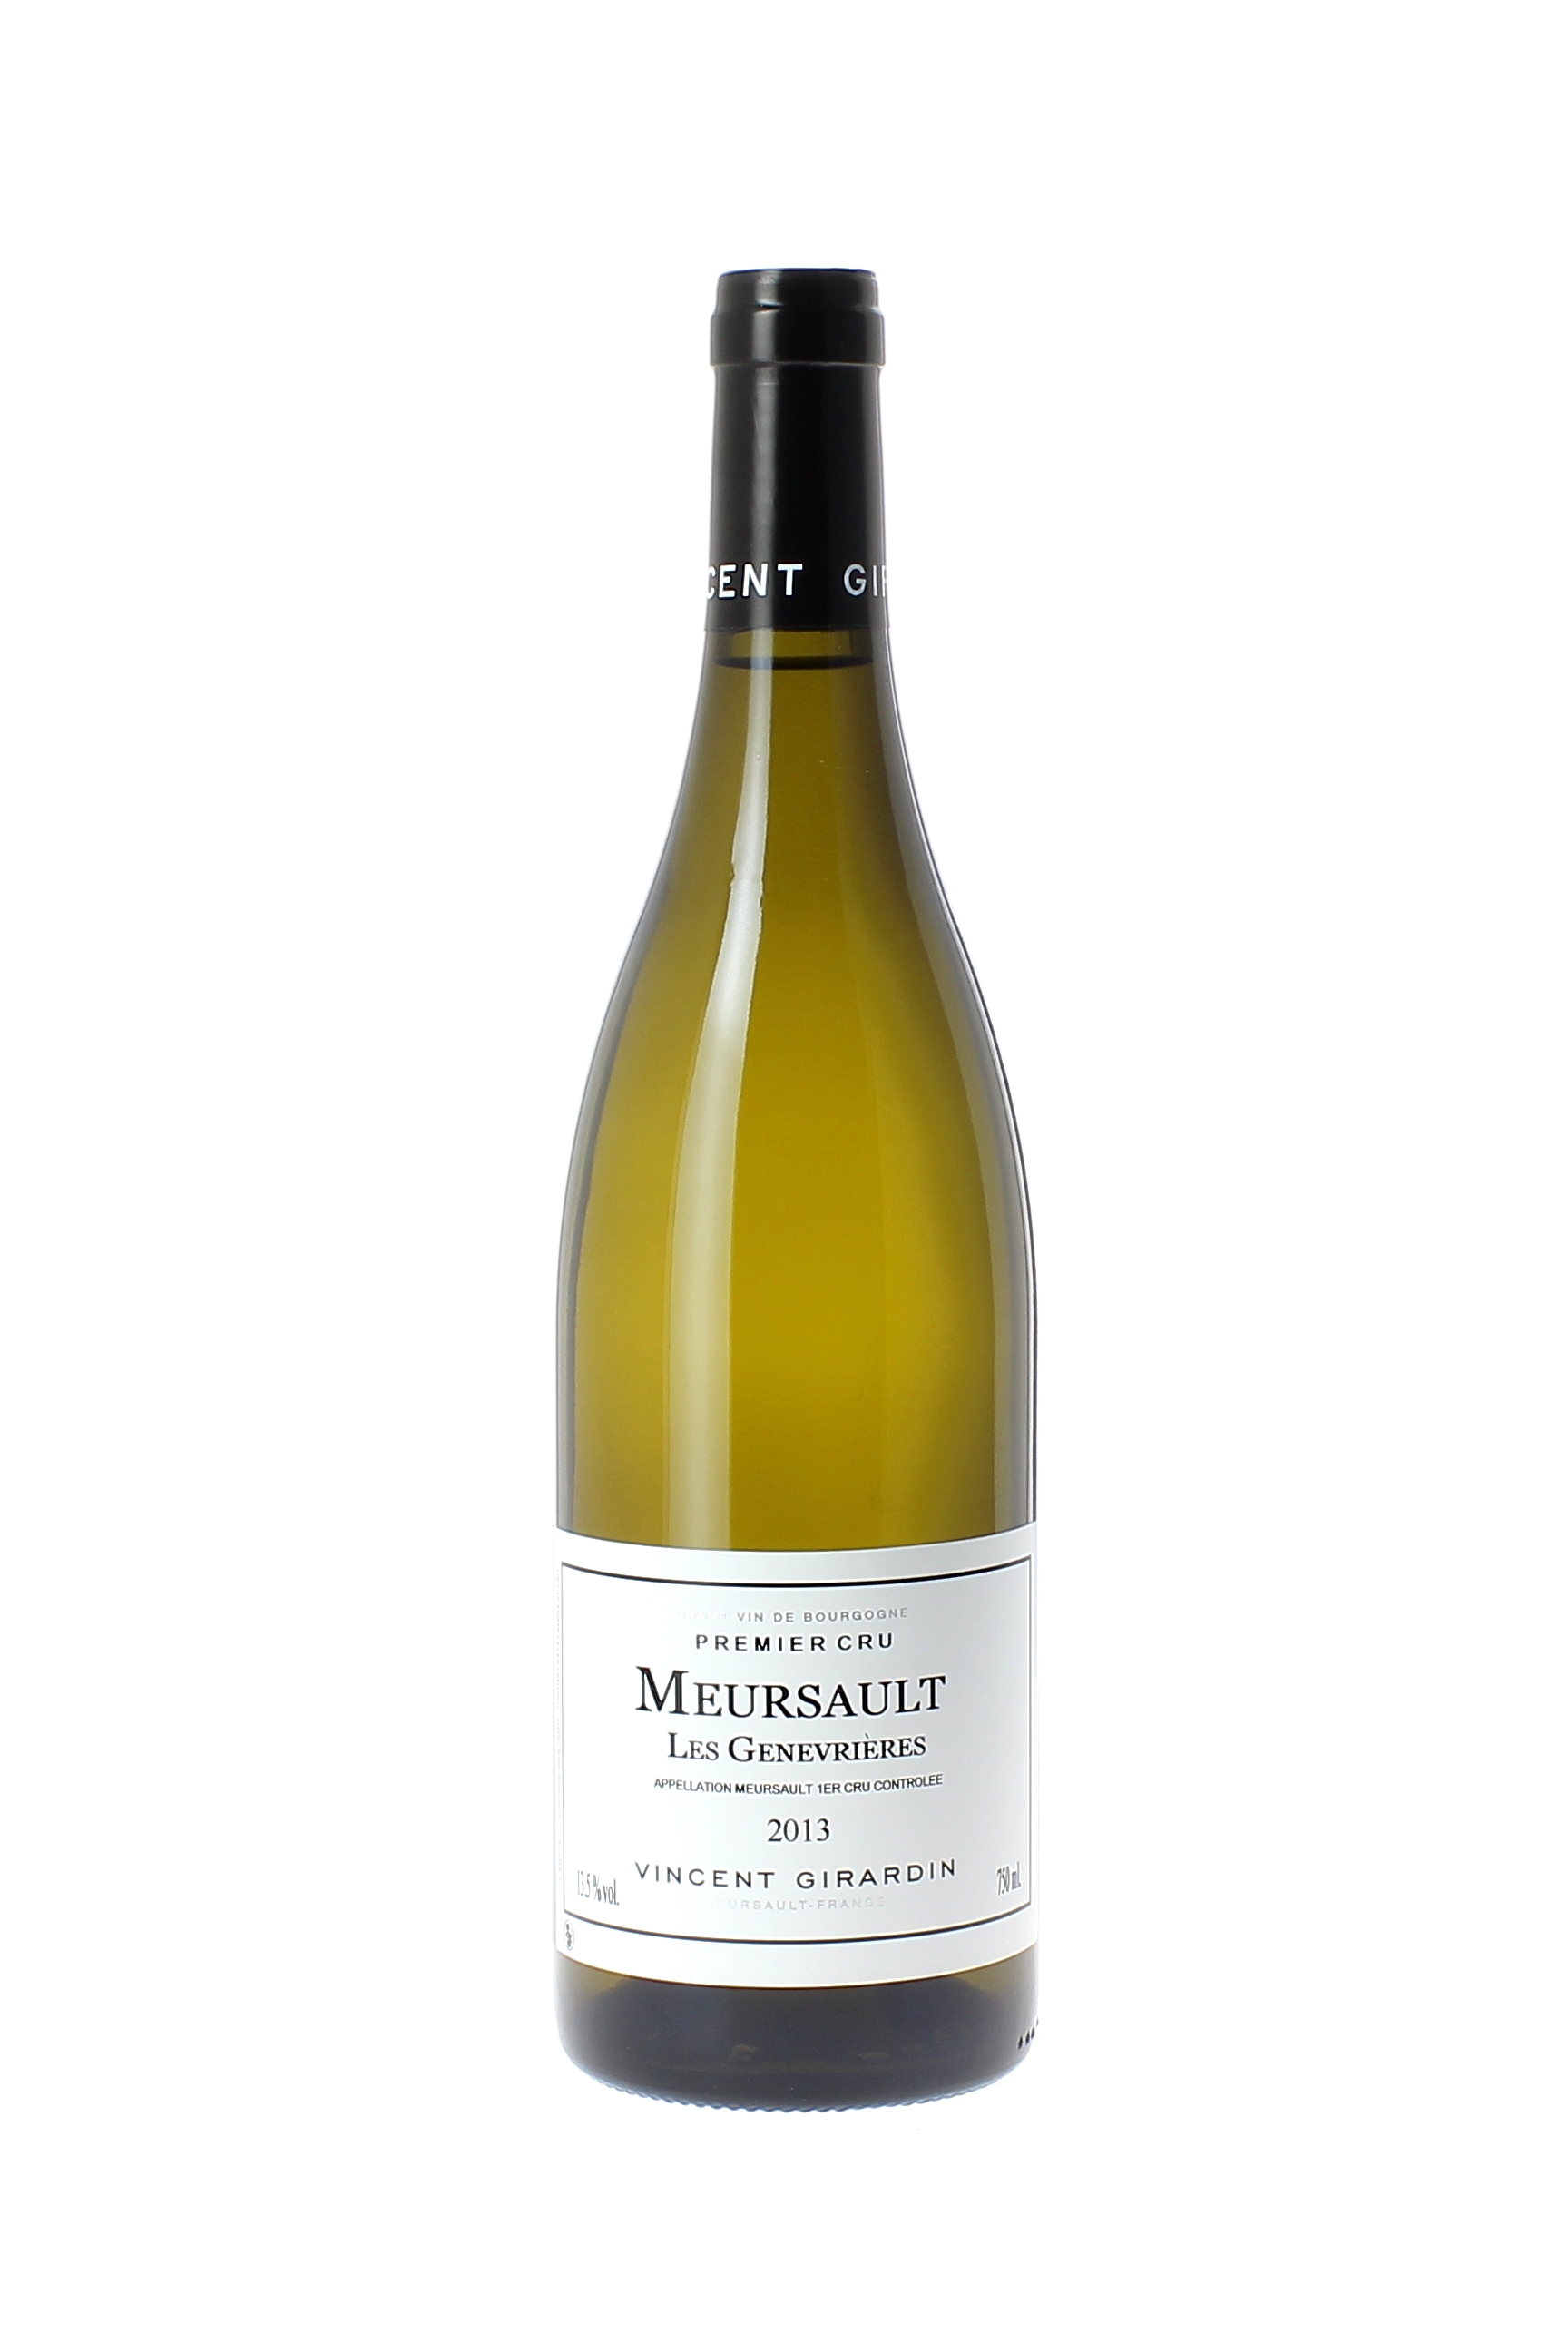 Meursault 1 er cru les genevrires 2015 Domaine GIRARDIN Vincent, Bourgogne blanc